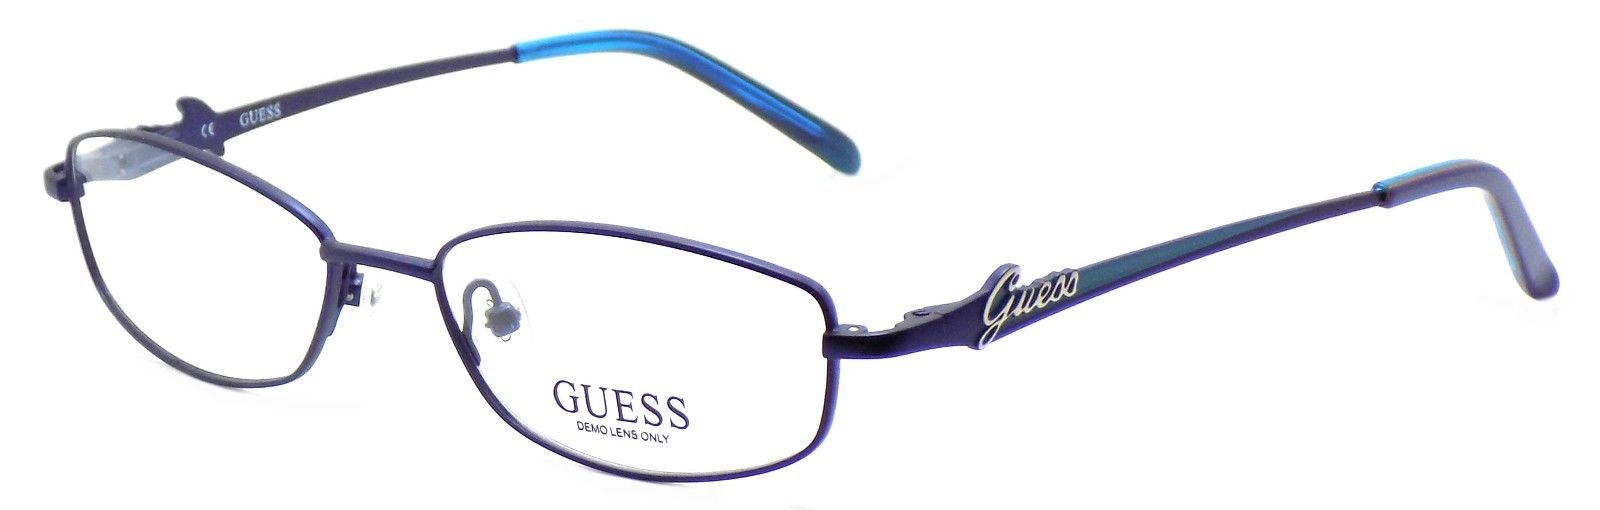 1-GUESS GU2284 BL Women's Eyeglasses Frames 51-16-135 Blue + CASE-715583443129-IKSpecs